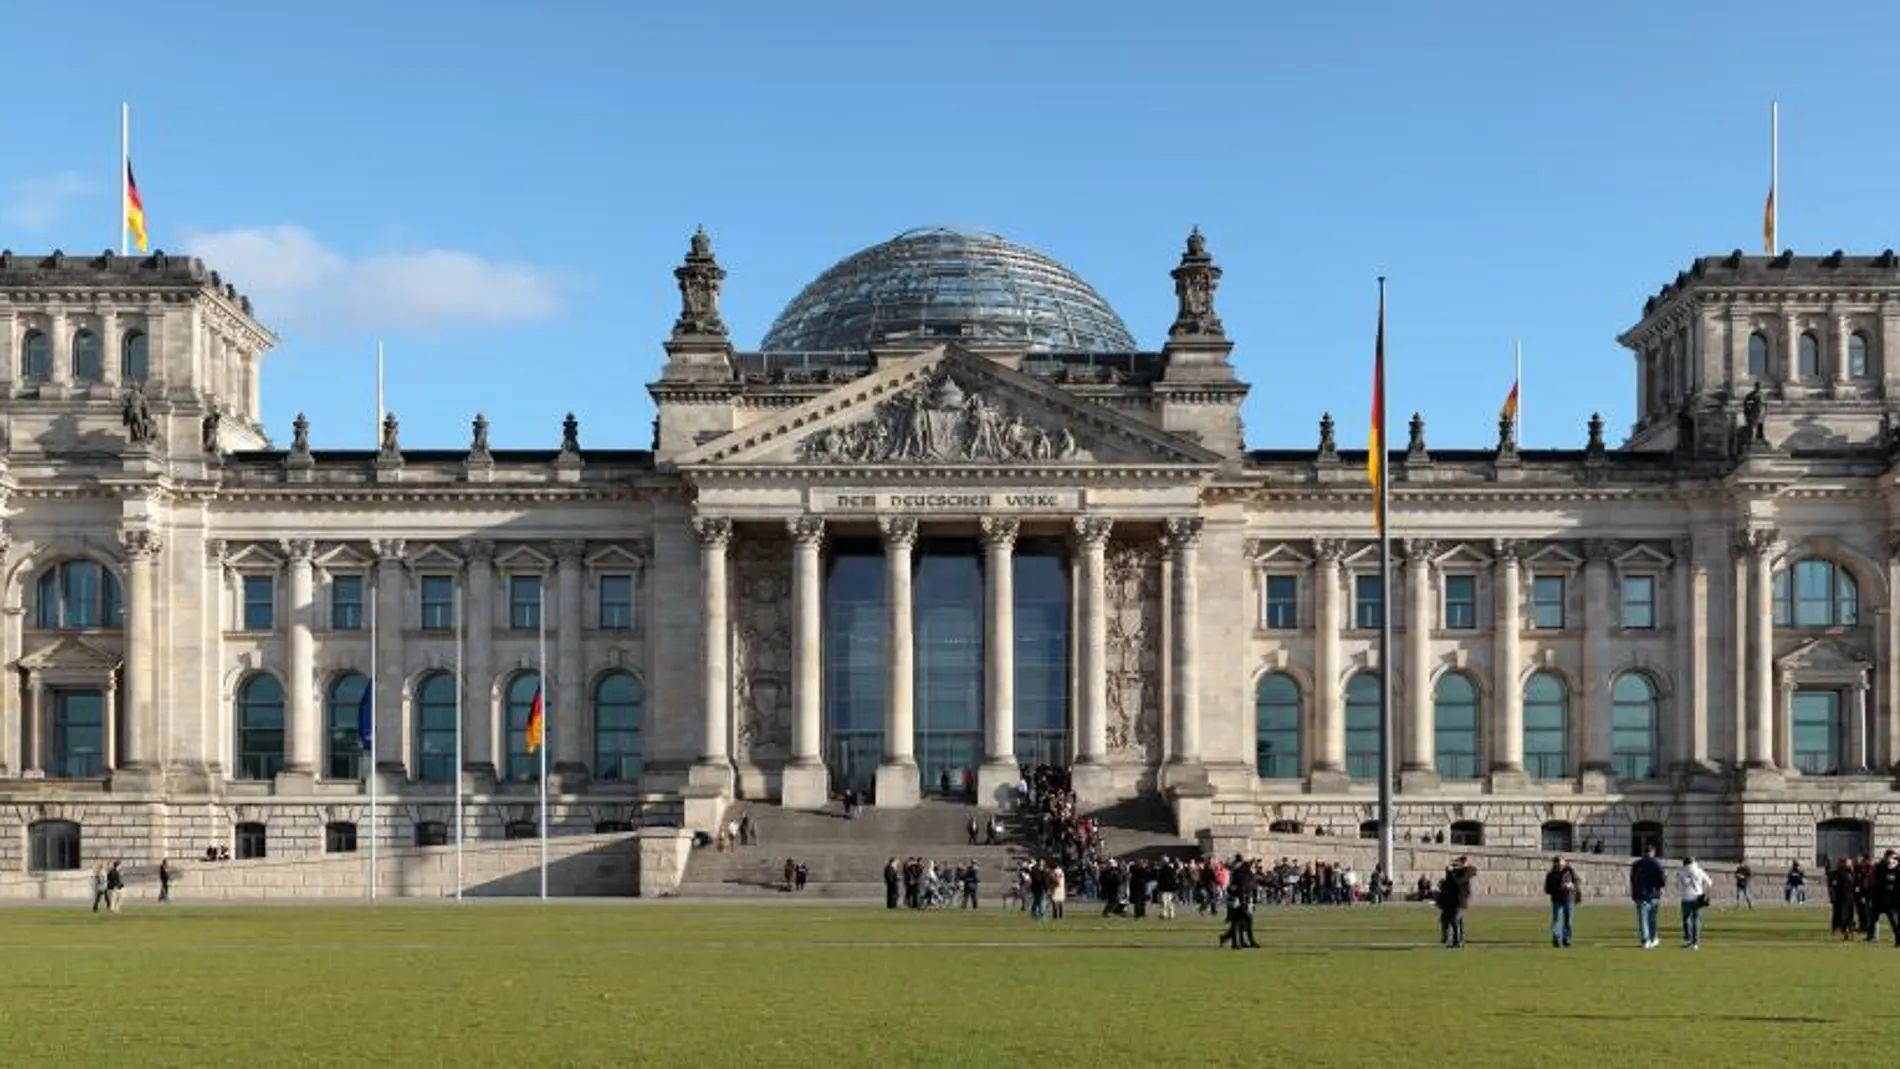 Edificio del Reichstag, el lugar de reunión del Parlamento Federal de Alemania o Bundestag.